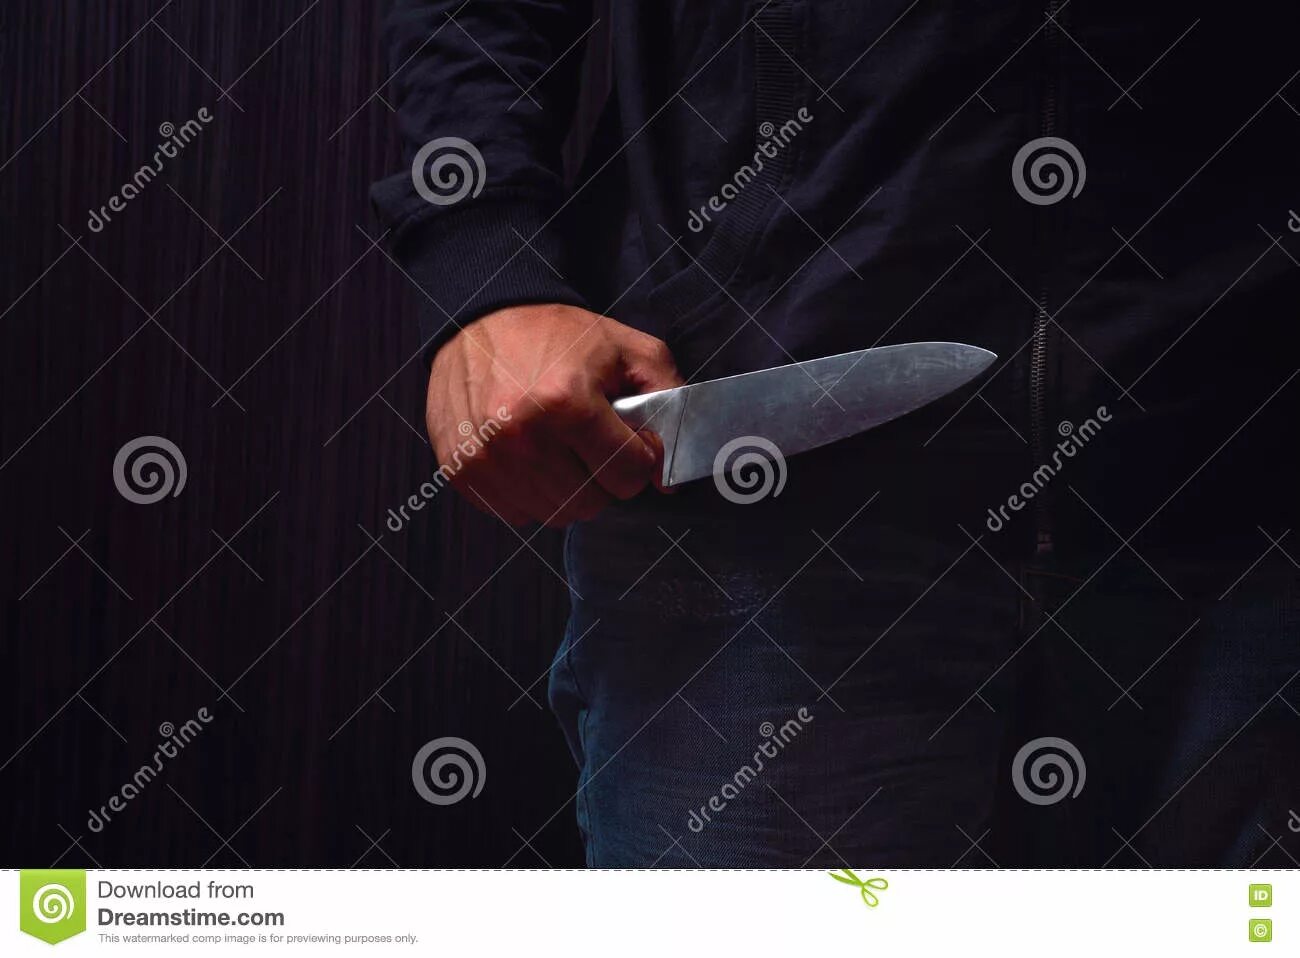 Девушка держит нож.